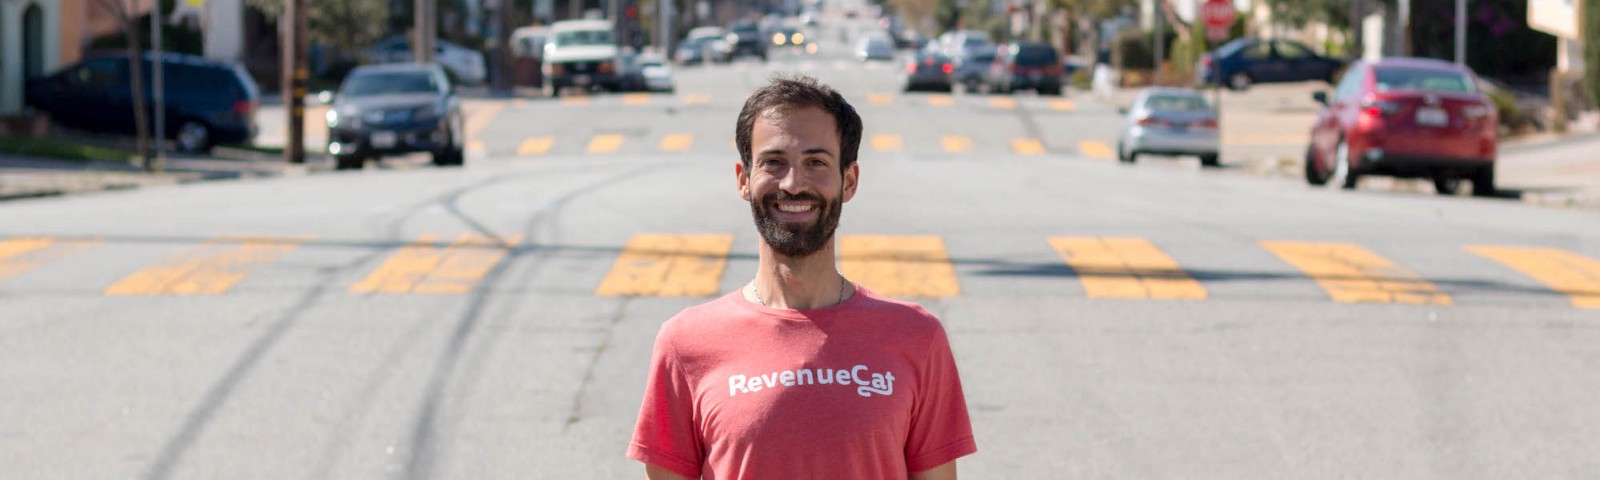 Miguel Carranza, talento sevillano en Silicon Valley al frente de RevenueCat